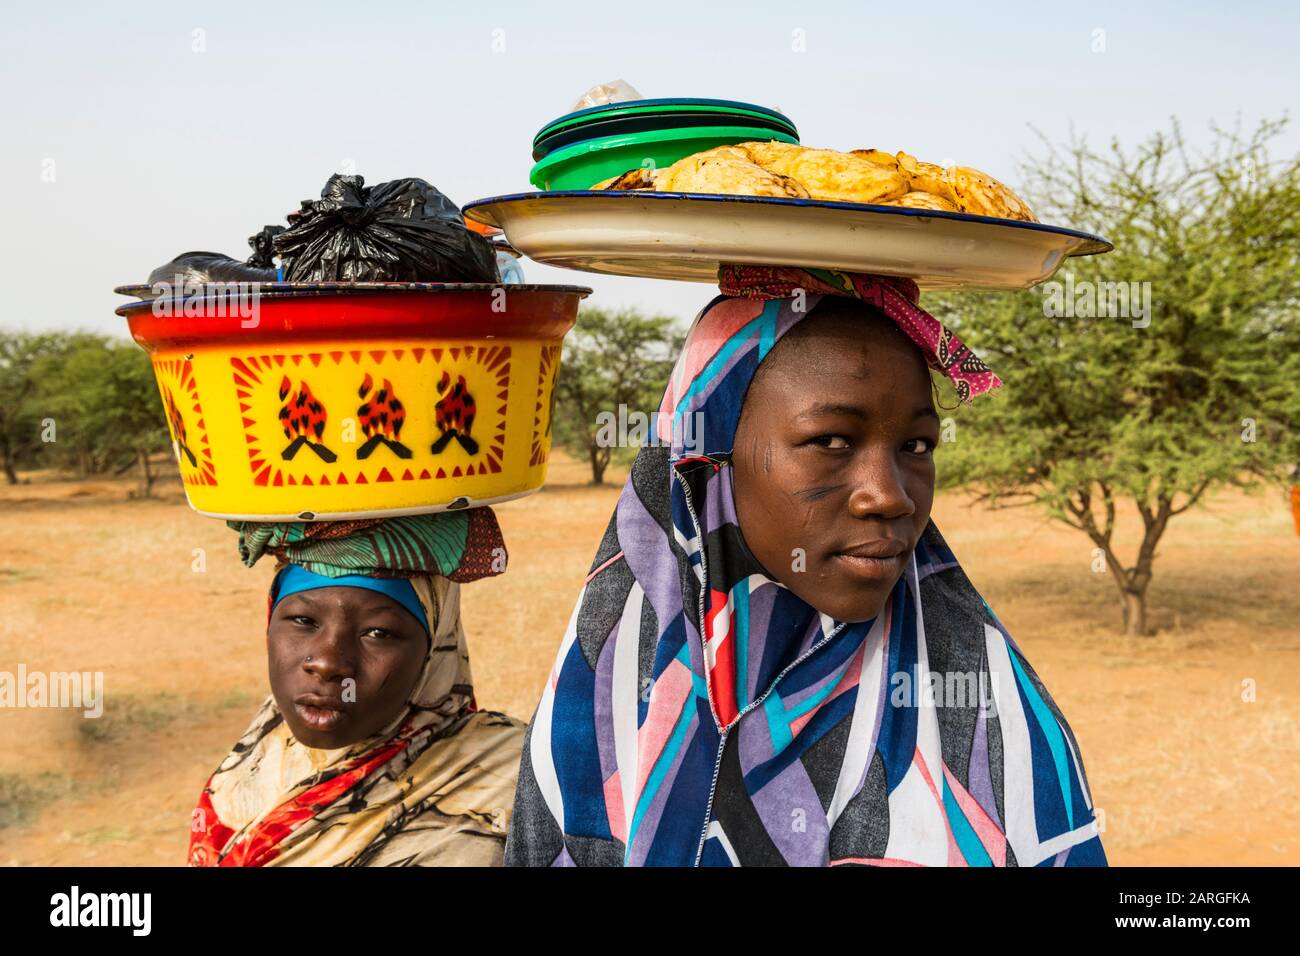 Jeunes filles vendant de la nourriture, festival Gerewol, concours rituel de courteship parmi le peuple Wodaabe Fula, Niger, Afrique de l'Ouest, Afrique Banque D'Images